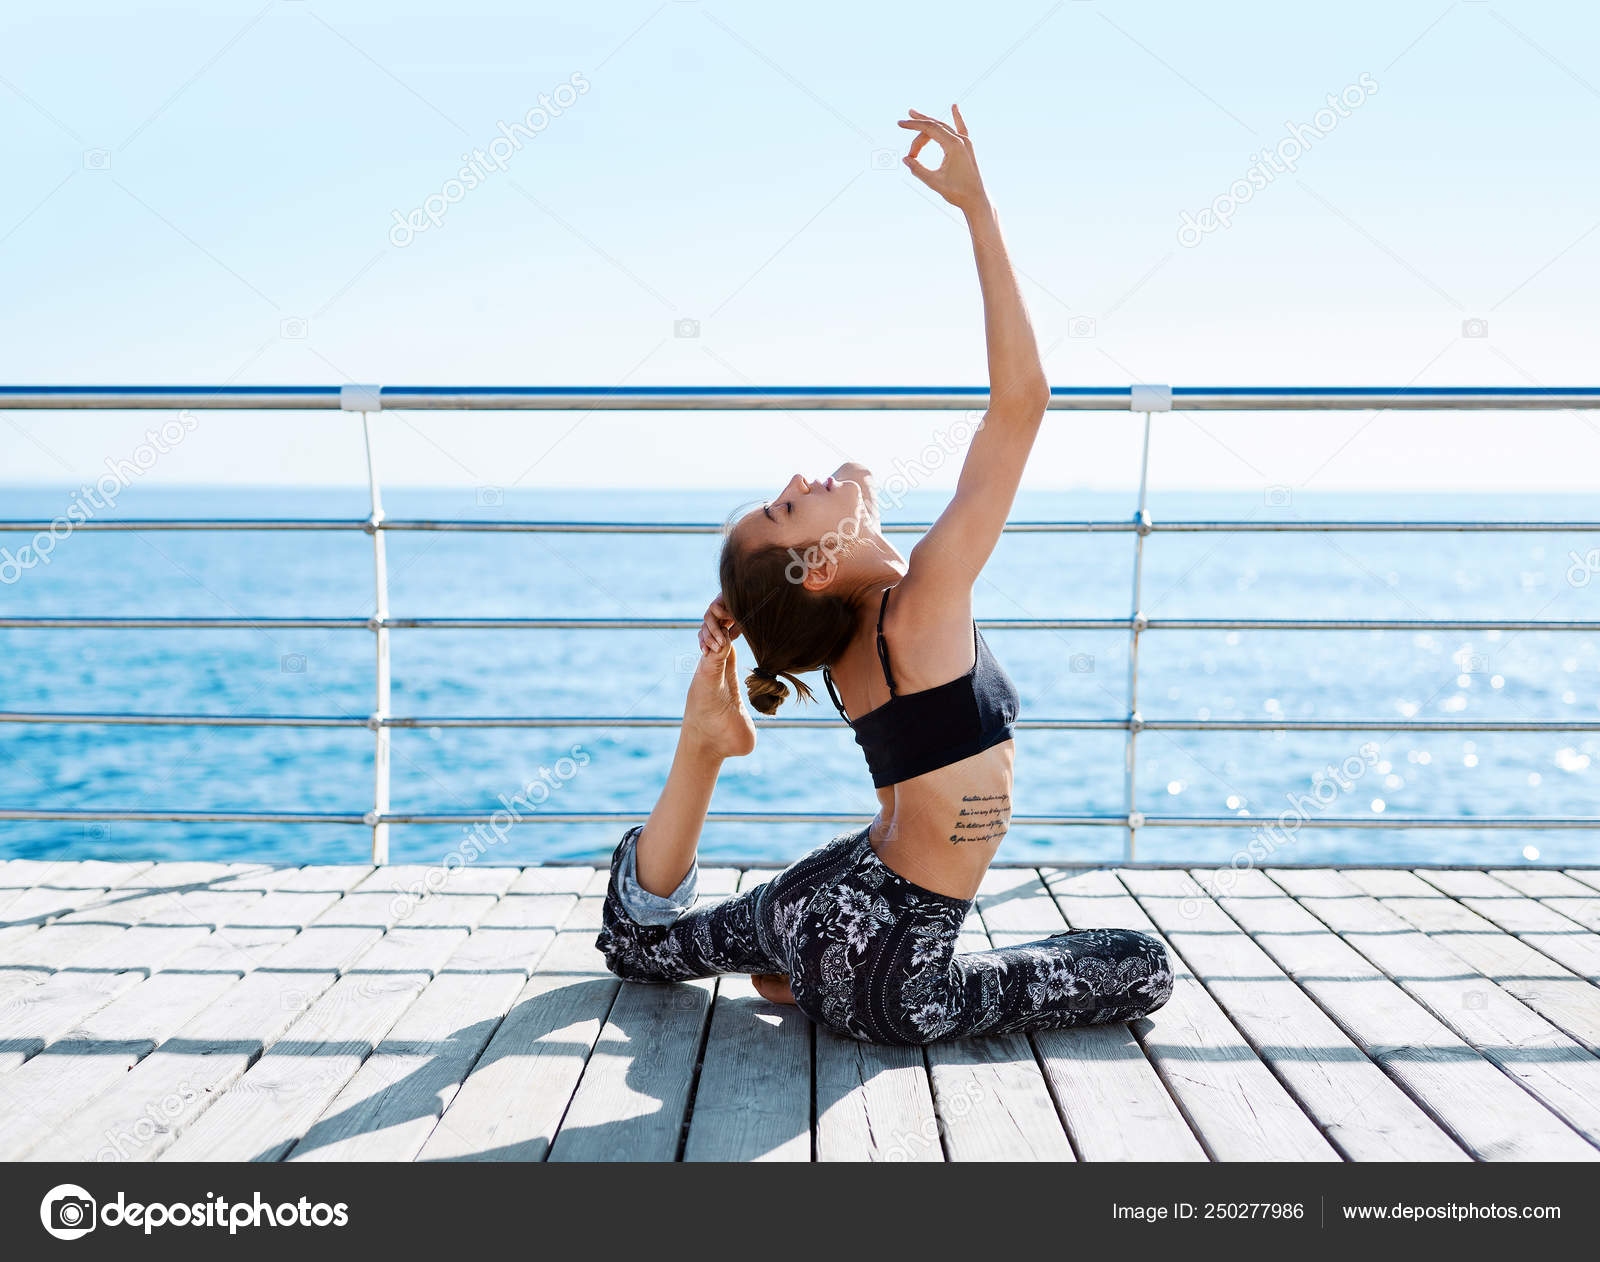 Beach yoga | Beach yoga, Beach yoga poses, Yoga poses